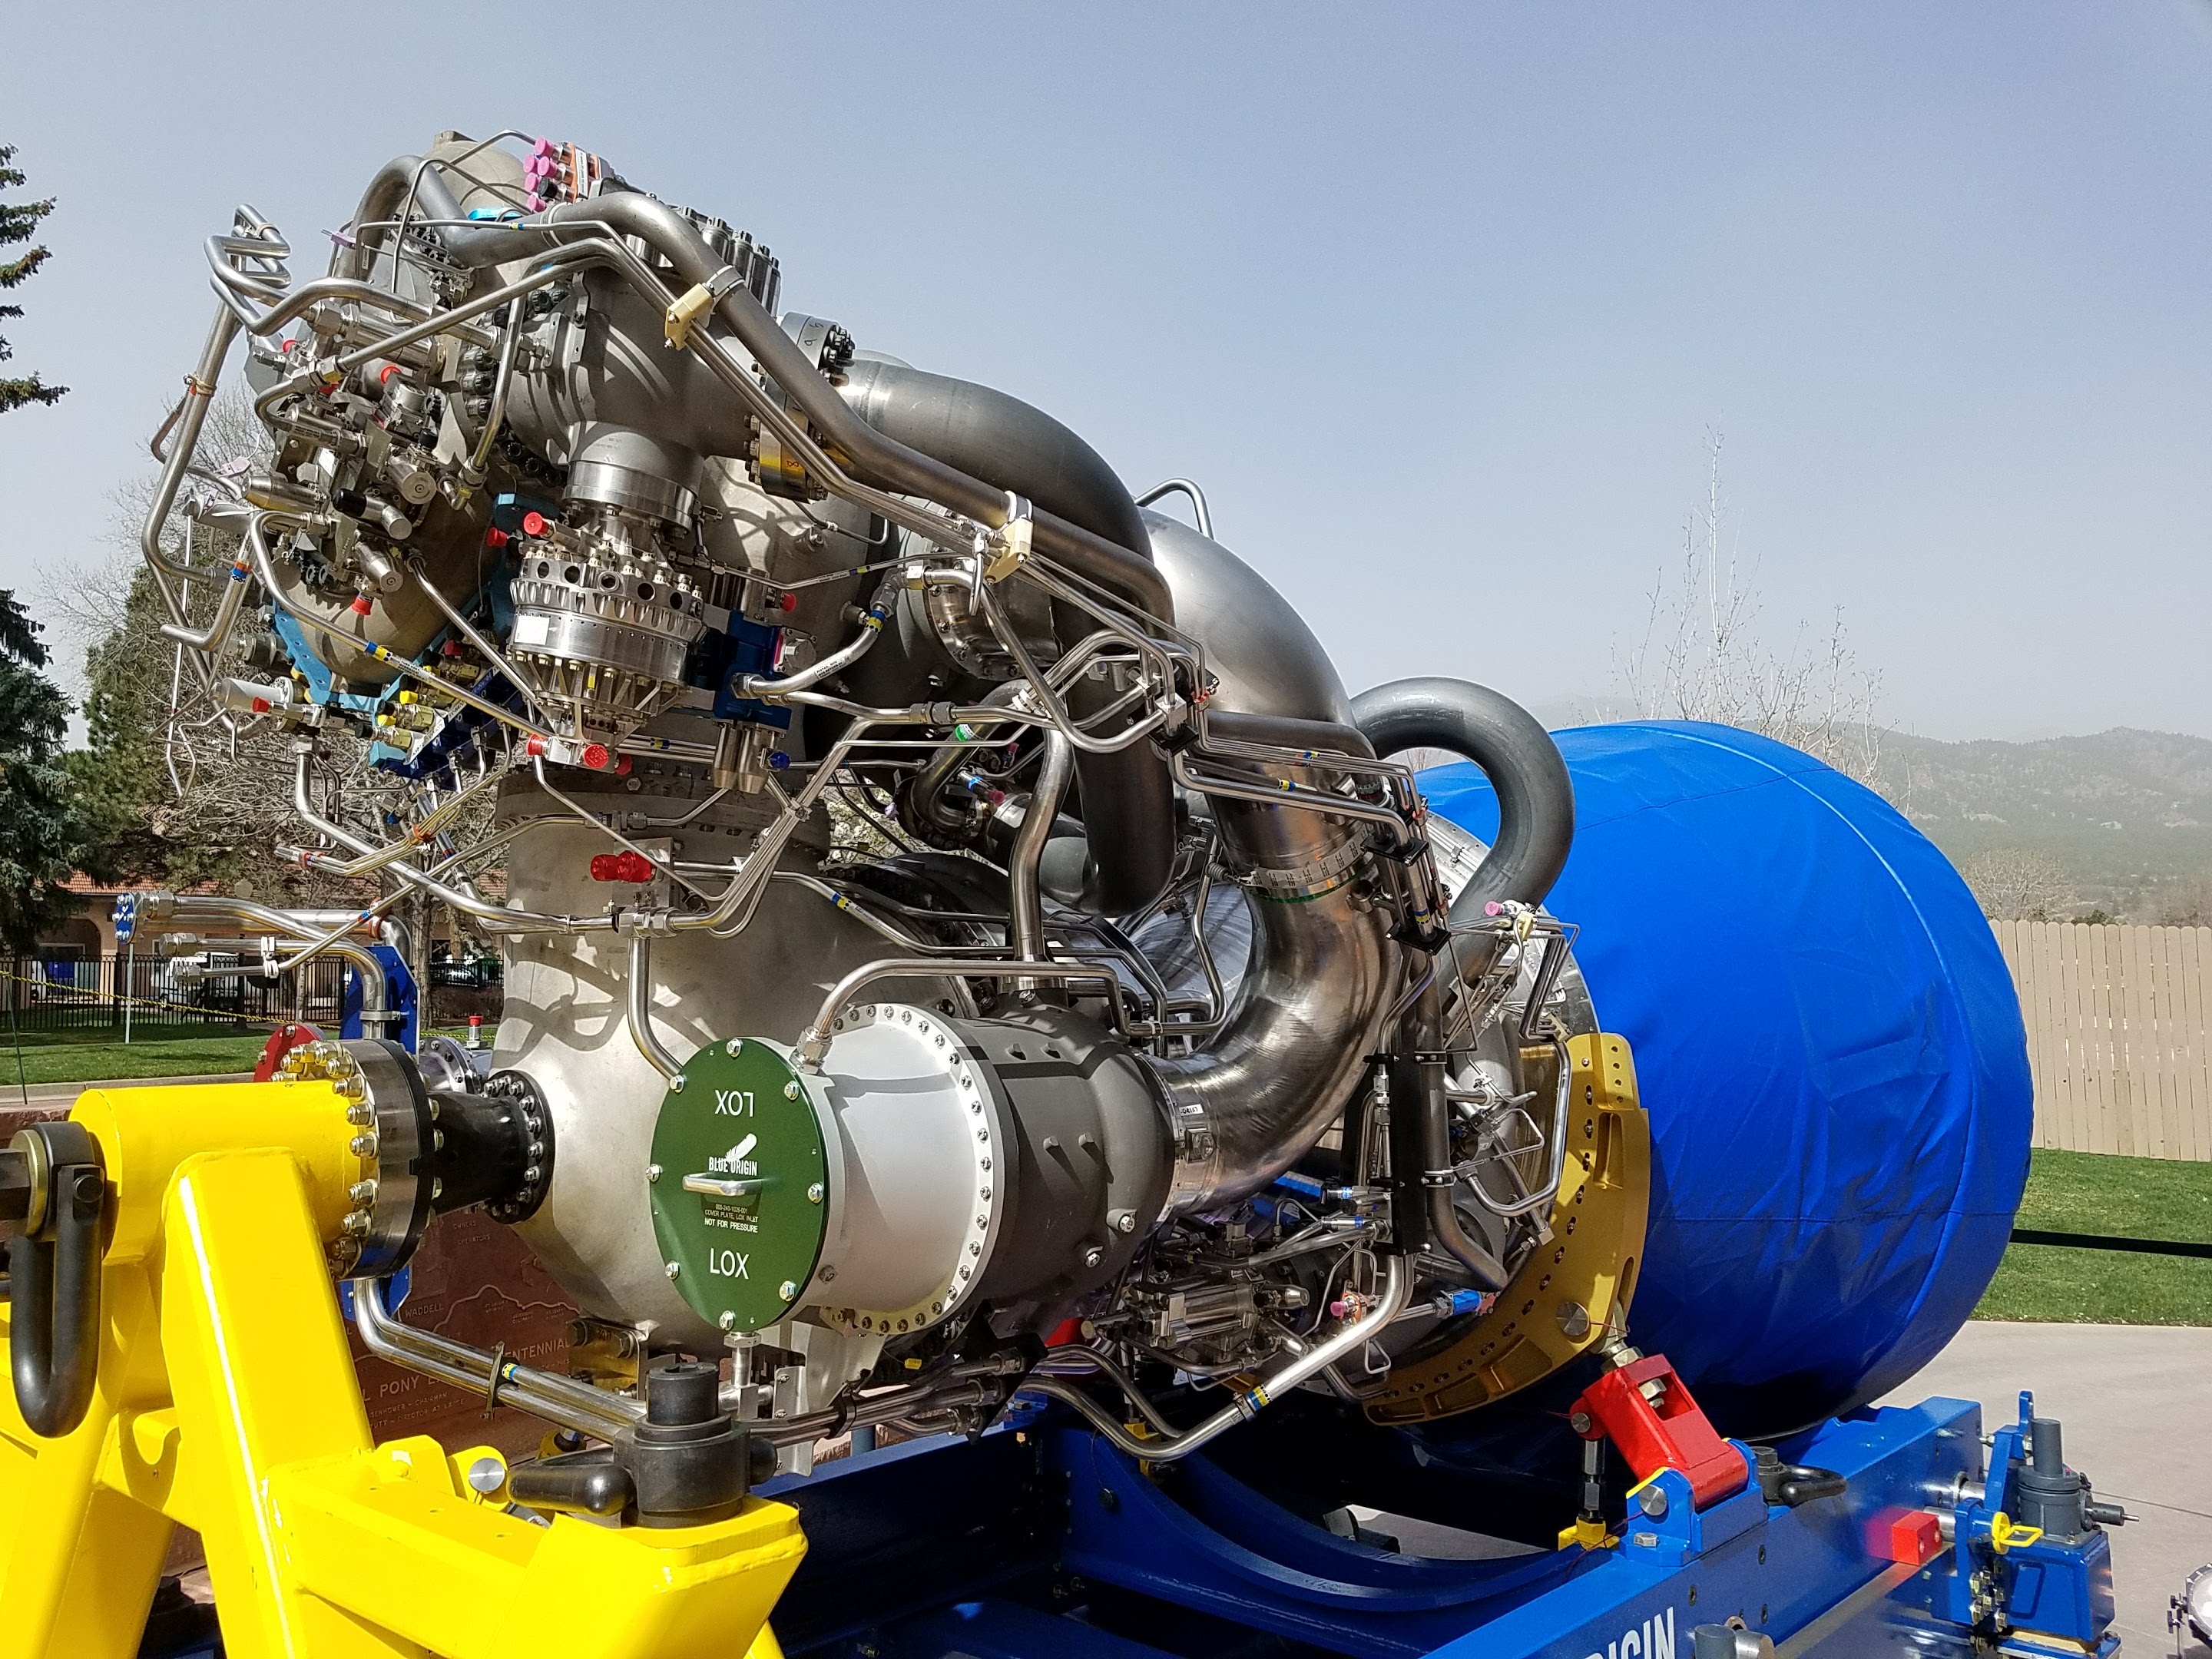 Двигатель ис. Antares РД-181 двигатель. РД-191 двигатель. Двигатель be-4 Blue Origin. Двигатели Merlin и РД 180.